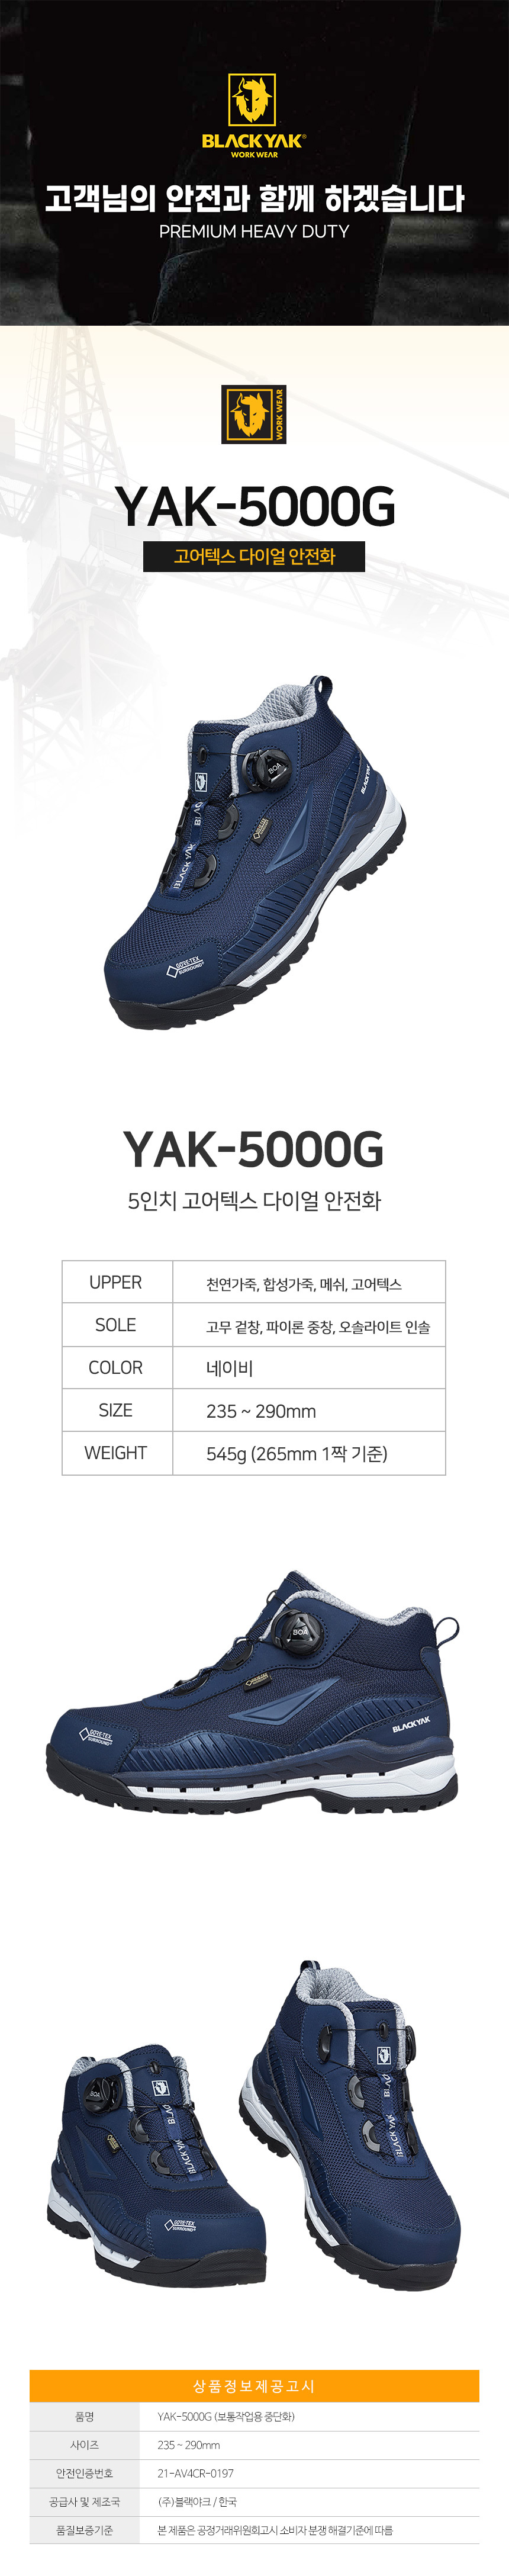 YAK-5000G_d01.jpg